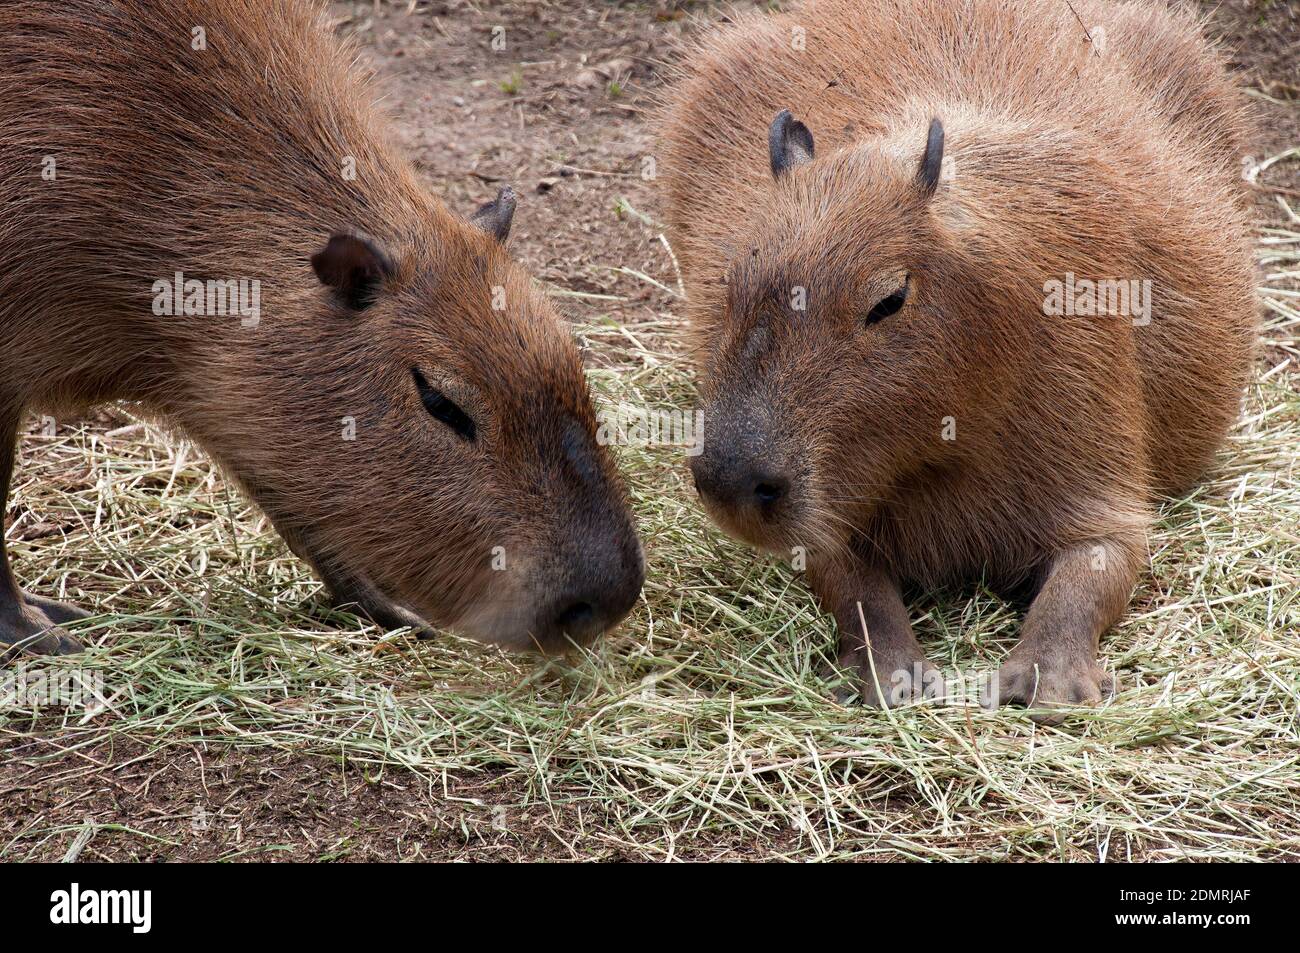 Sydney Australie, gros plan de la tête d'un capybara qui est le plus grand  rongeur vivant Photo Stock - Alamy